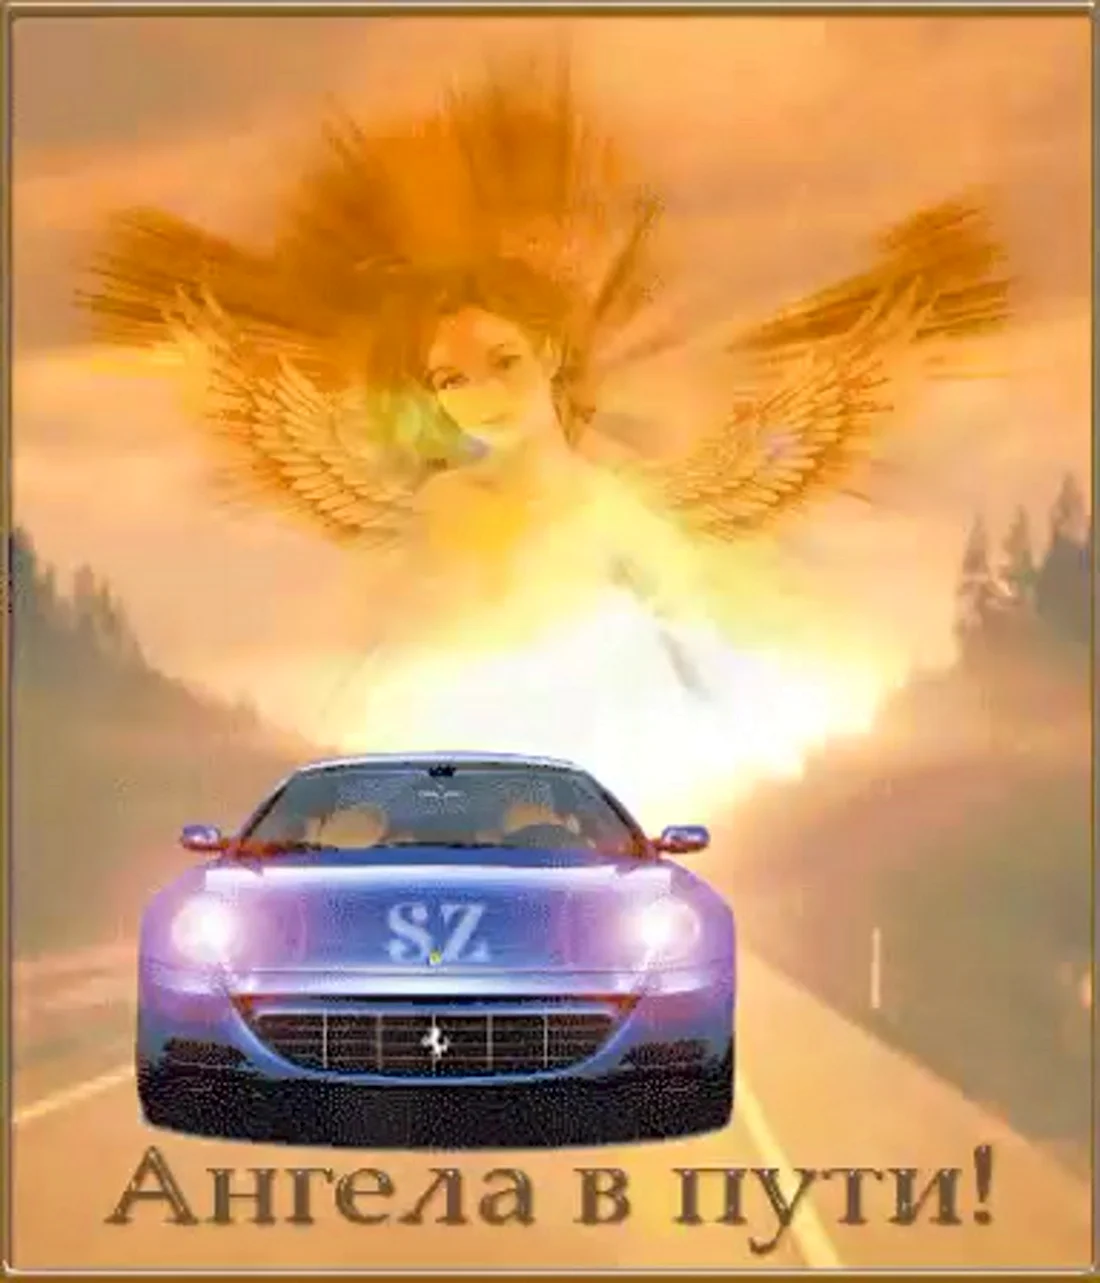 Ангела хранителя в дорогу открытка